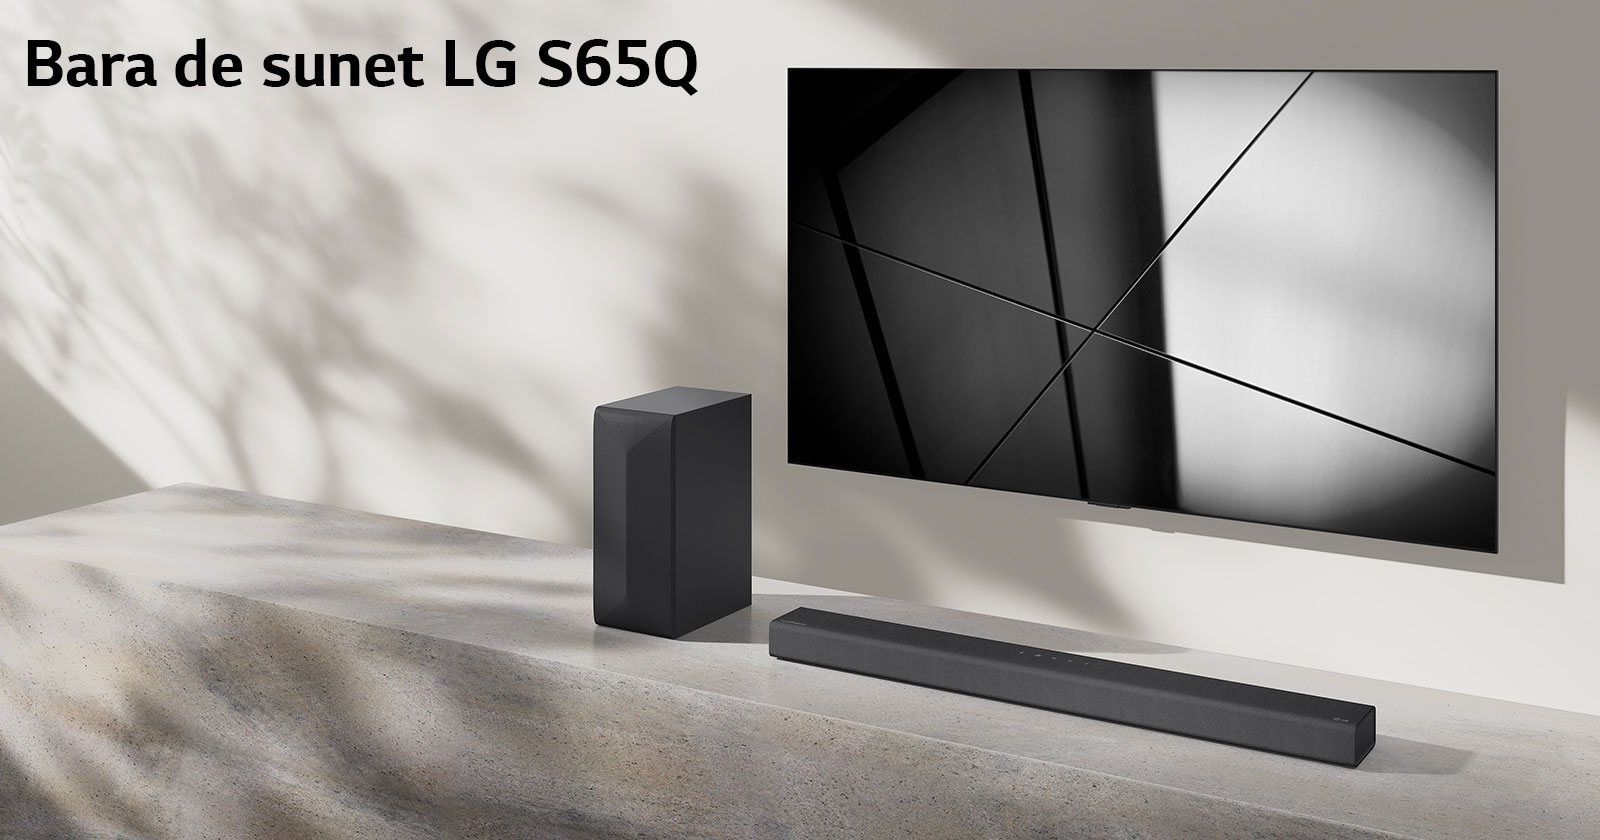 Bara de sunet S65Q și televizorul LG sunt așezate împreună în camera de zi. Televizorul este pornit, afișând o imagine alb-negru.